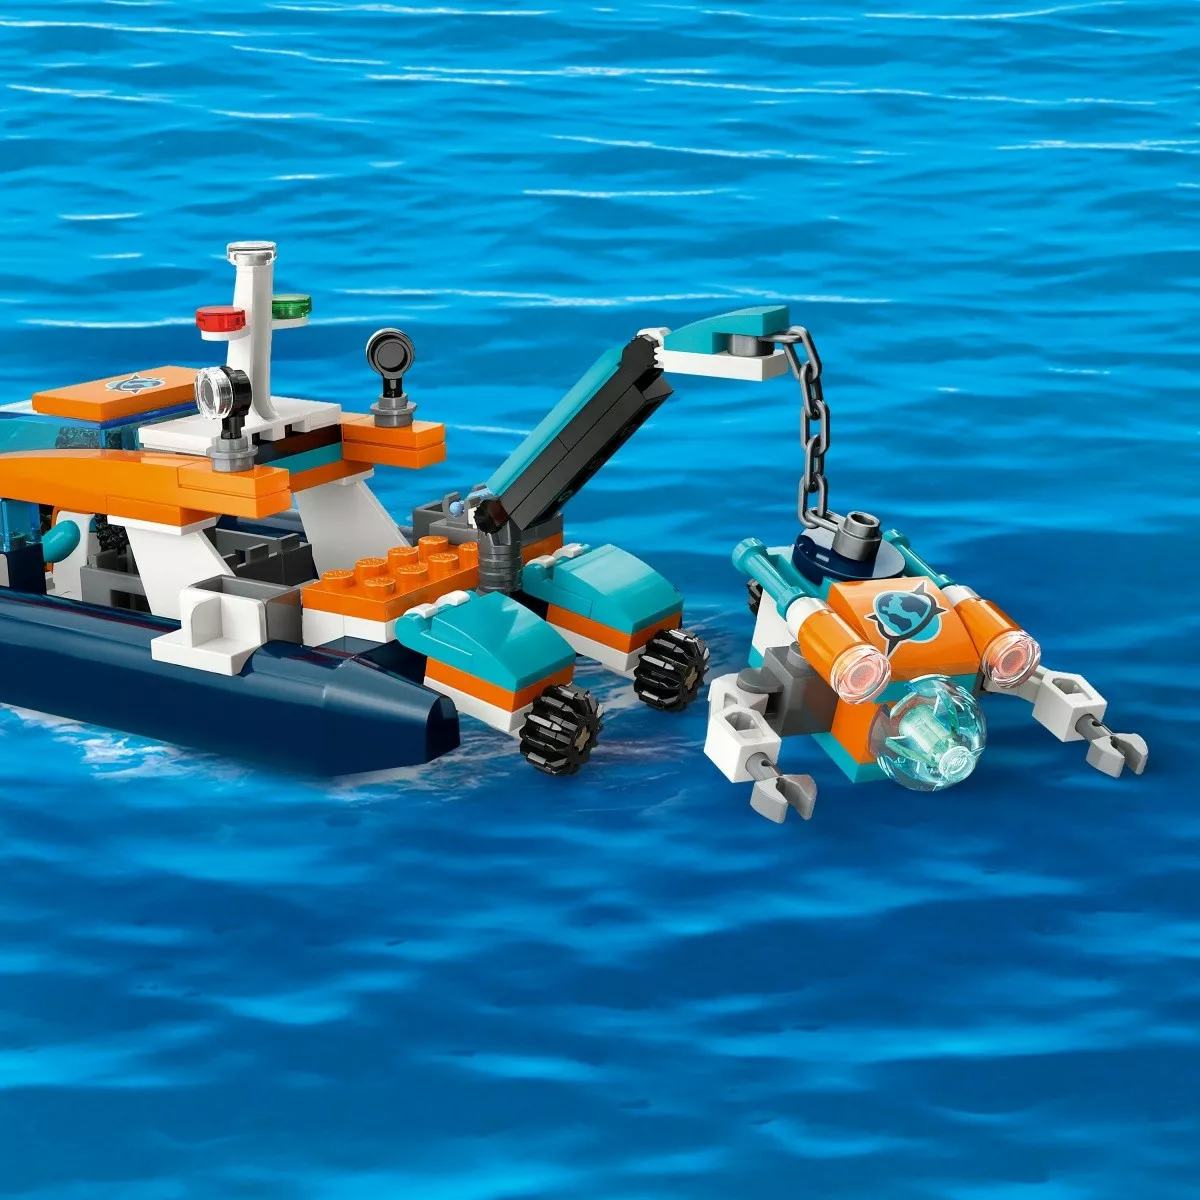 LEGO Klocki City 60377 Łódź do nurkowania badacza